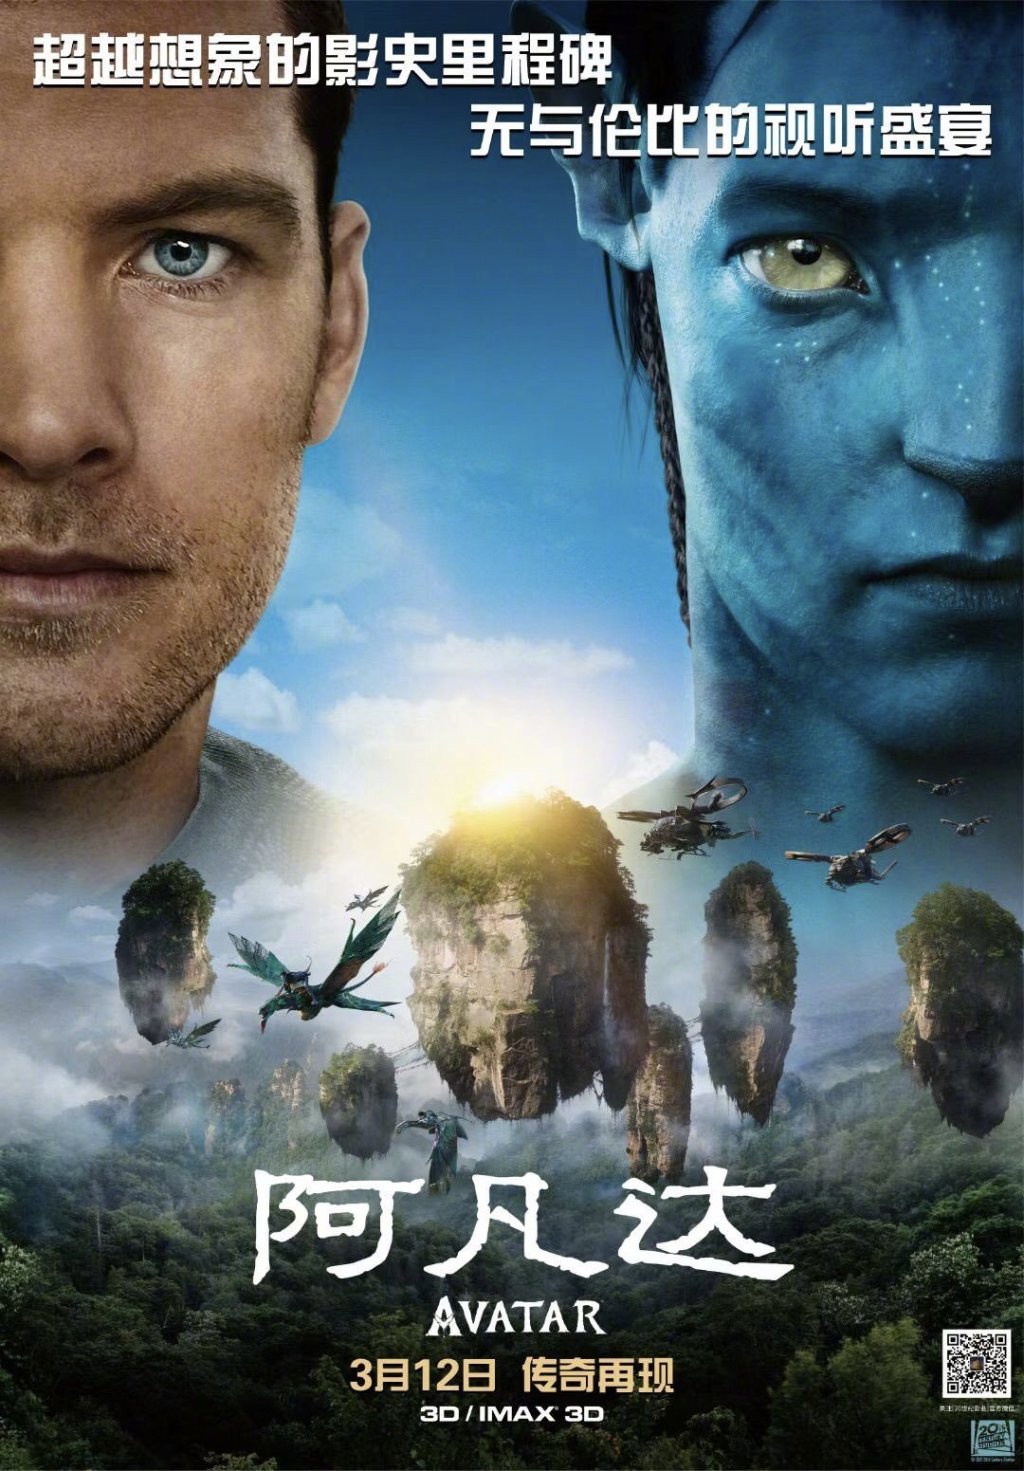 El relanzamiento de "Avatar" se abre a $ 21 millones en China mientras la película regresa a la corona mundial - fecha límite